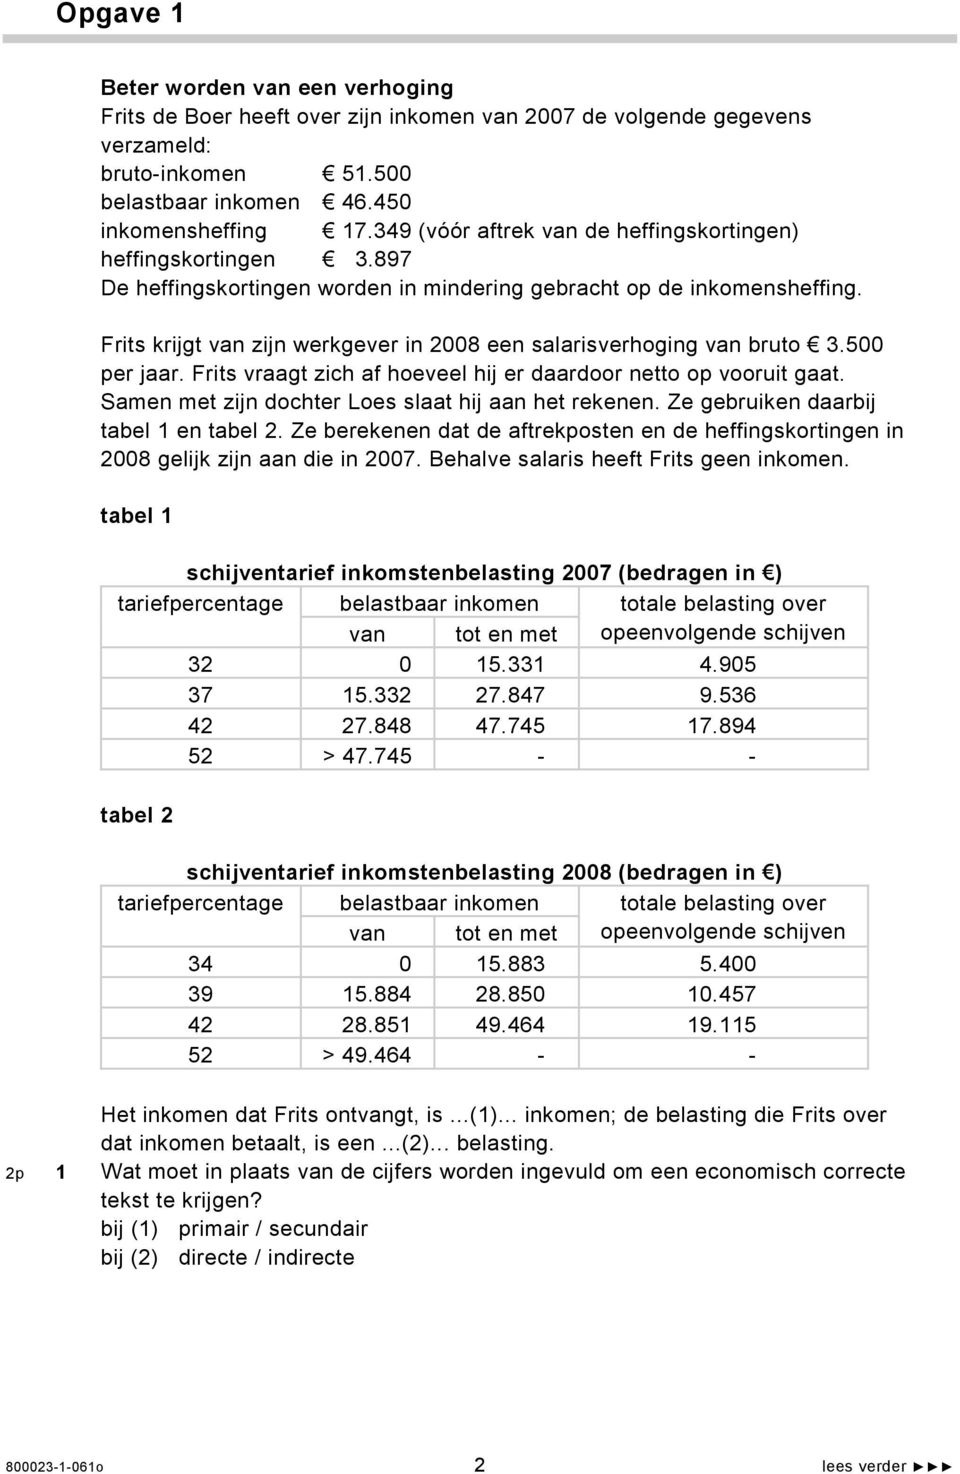 Frits krijgt van zijn werkgever in 2008 een salarisverhoging van bruto 3.500 per jaar. Frits vraagt zich af hoeveel hij er daardoor netto op vooruit gaat.